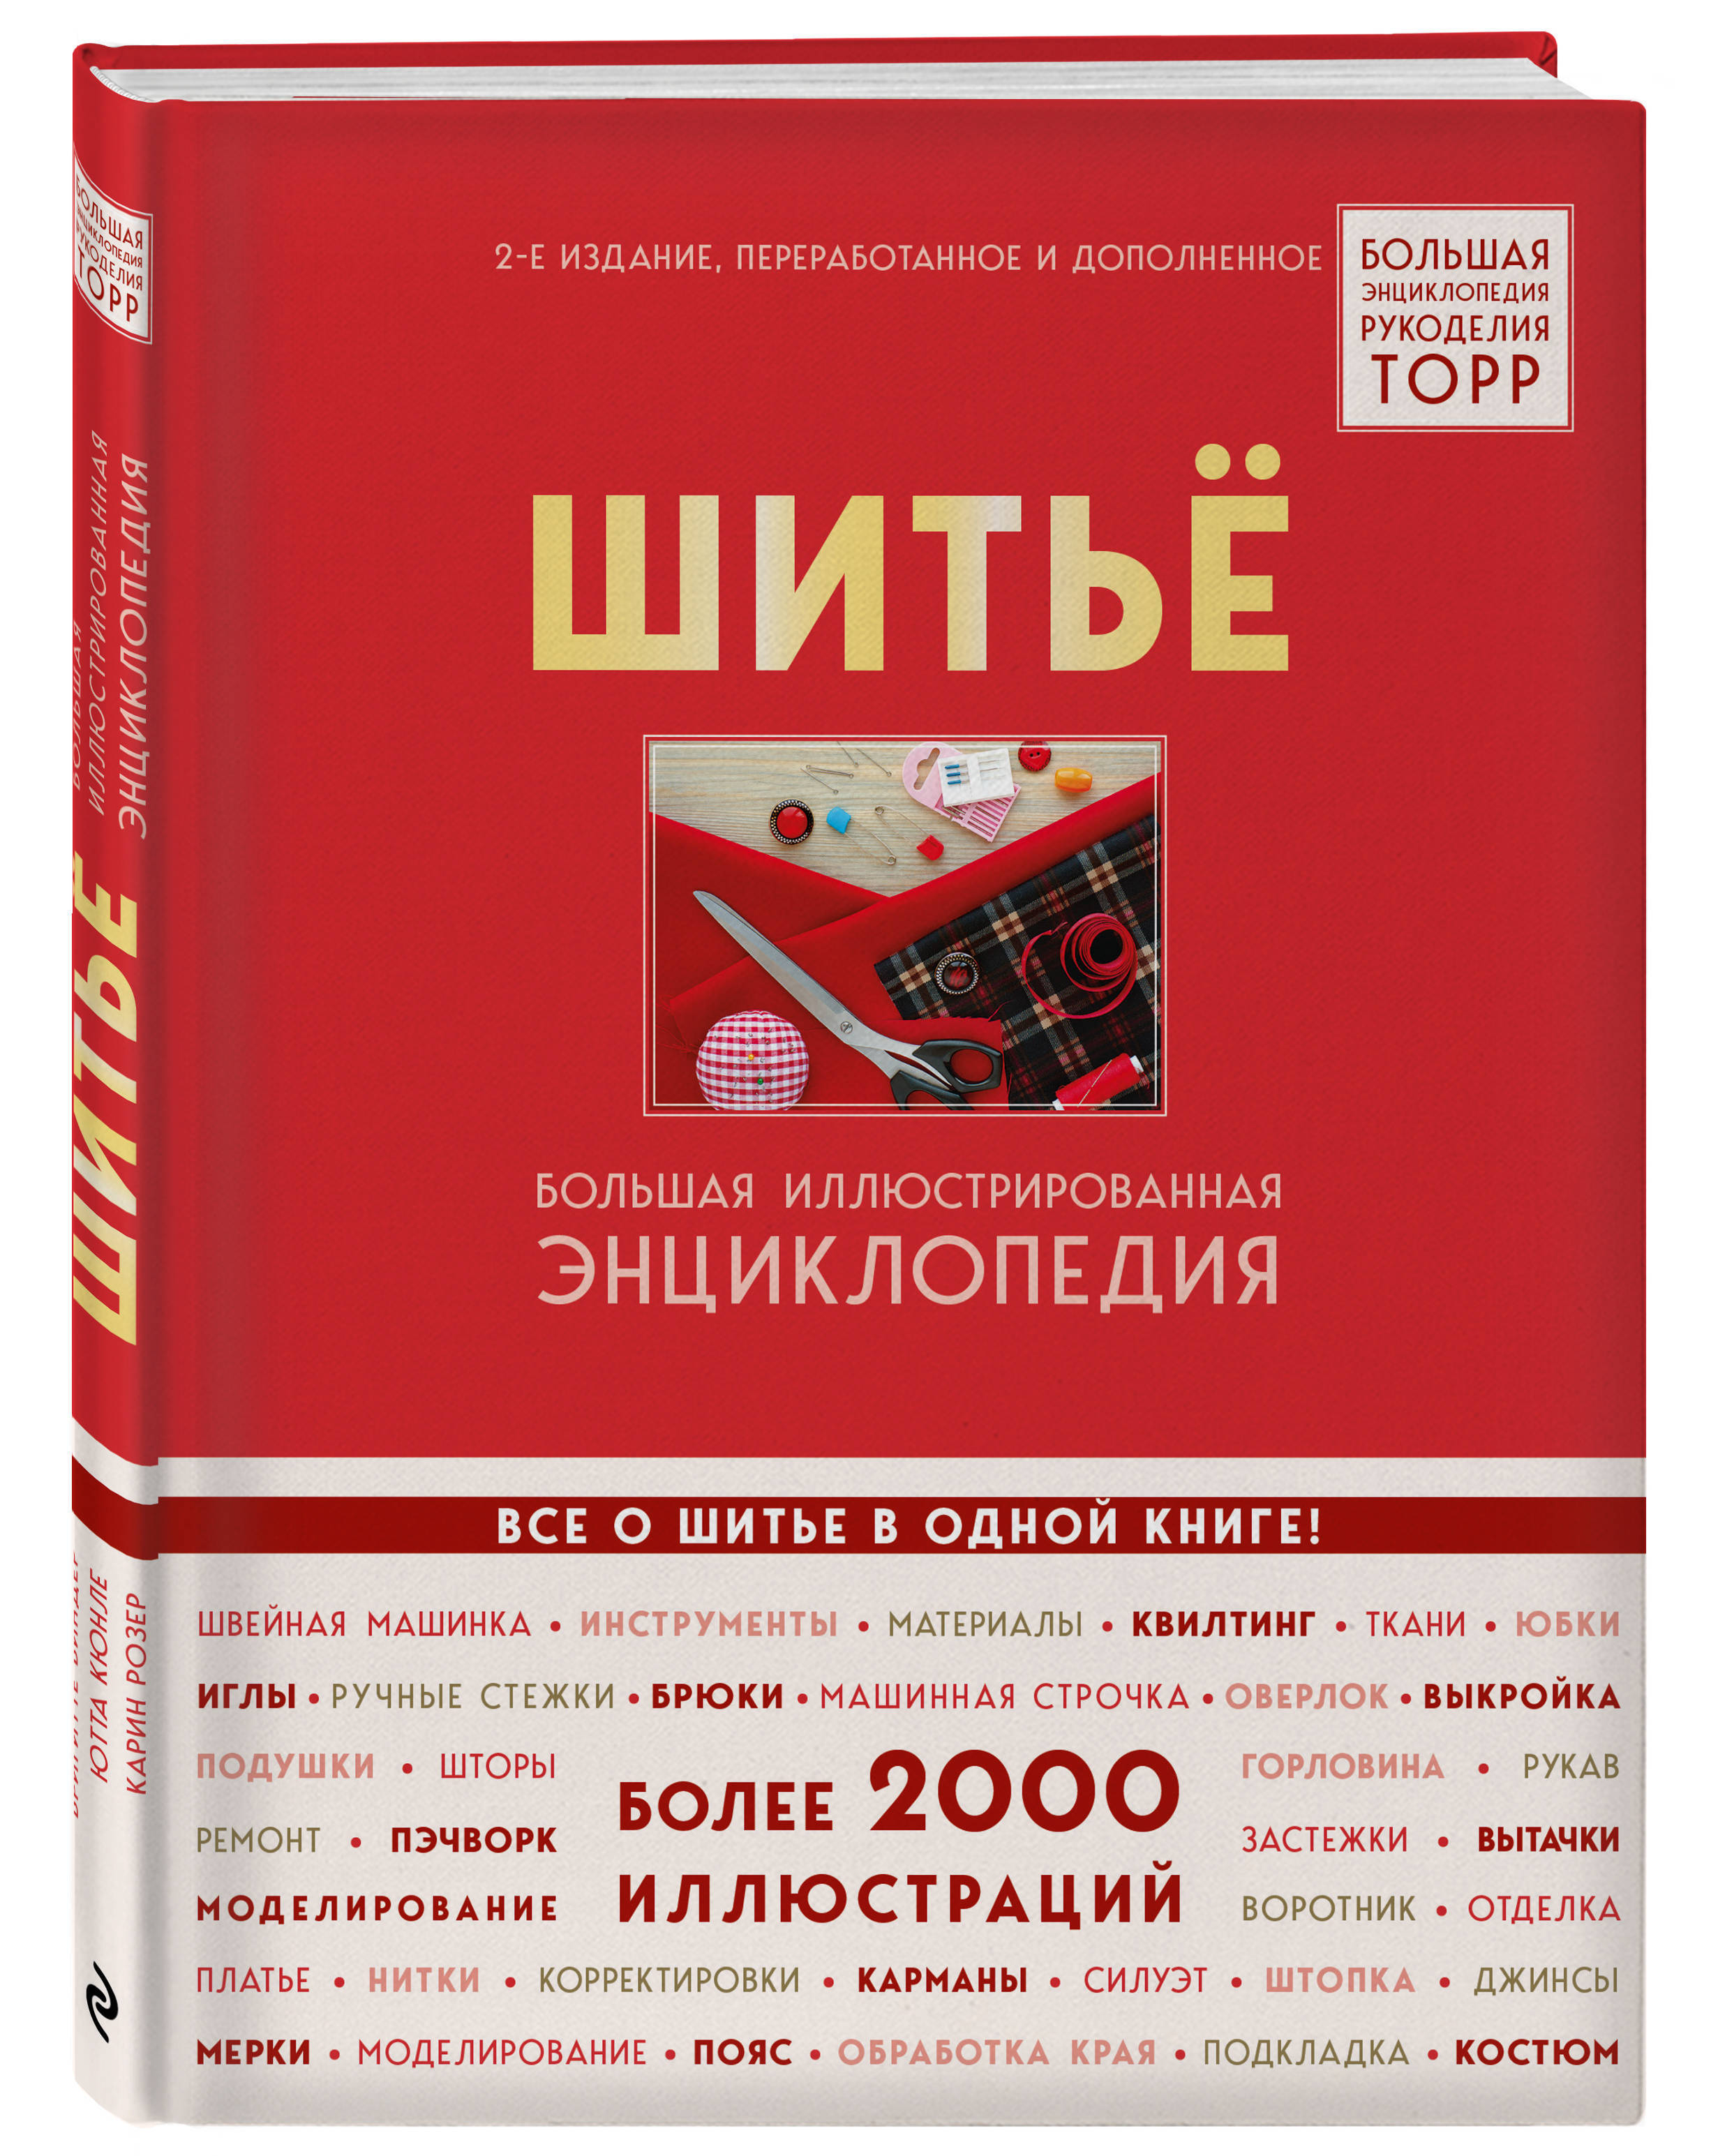 СКЛАД ХОББИ - Вышивка по доступным ценам в интернет магазине в Москве.